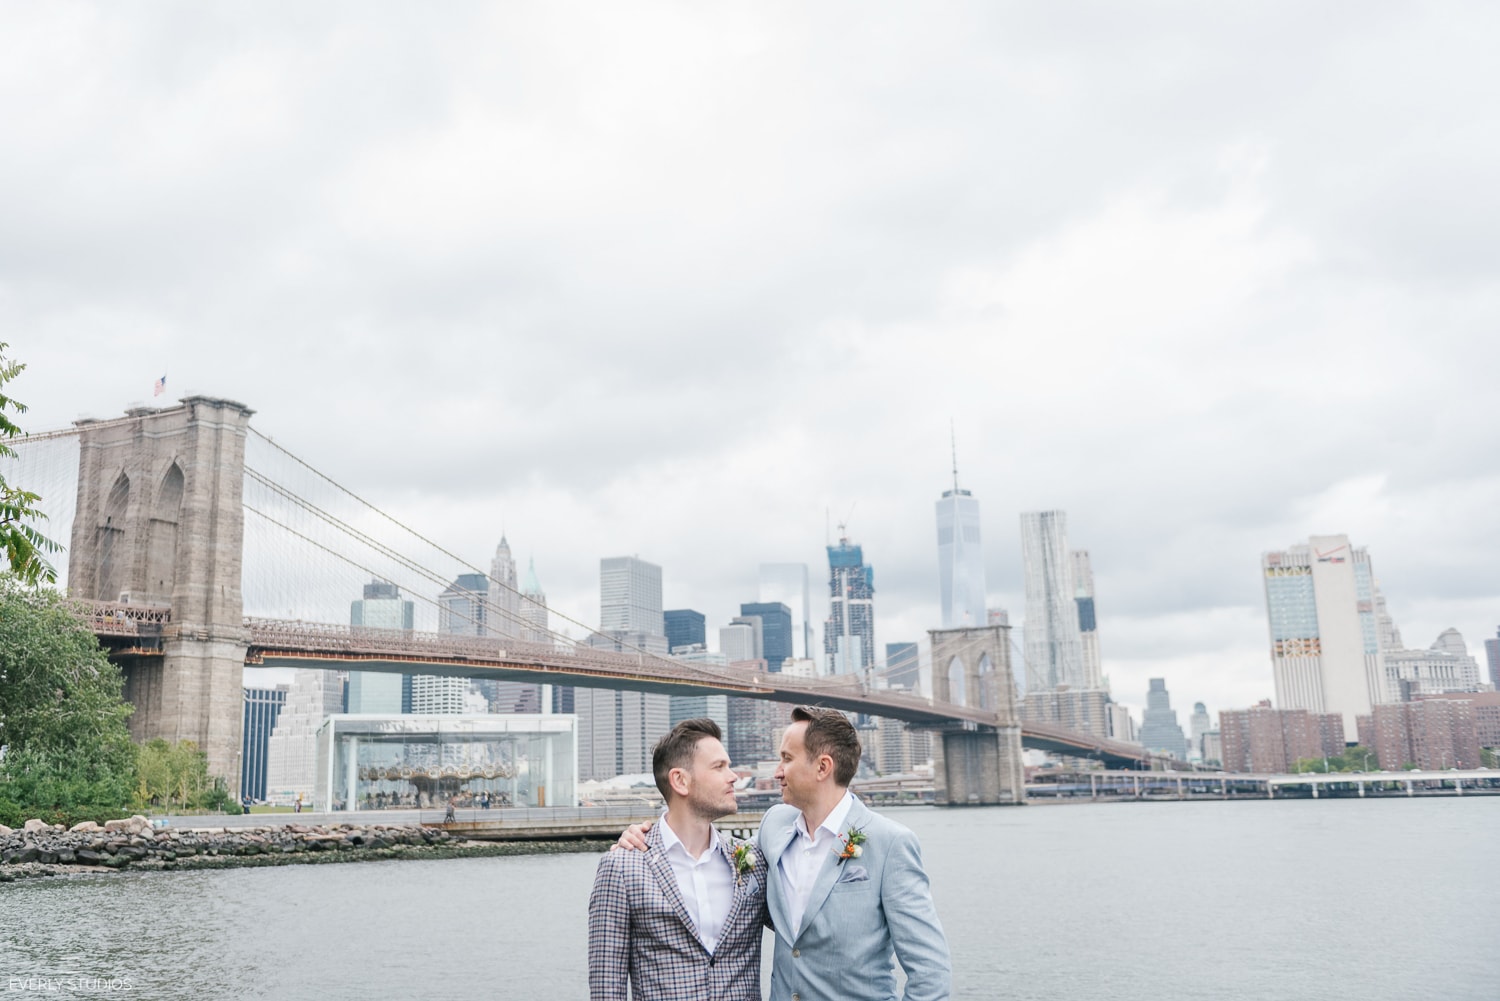 Brooklyn Bridge Park gay wedding. Photos by Everly Studios, www.everlystudios.com